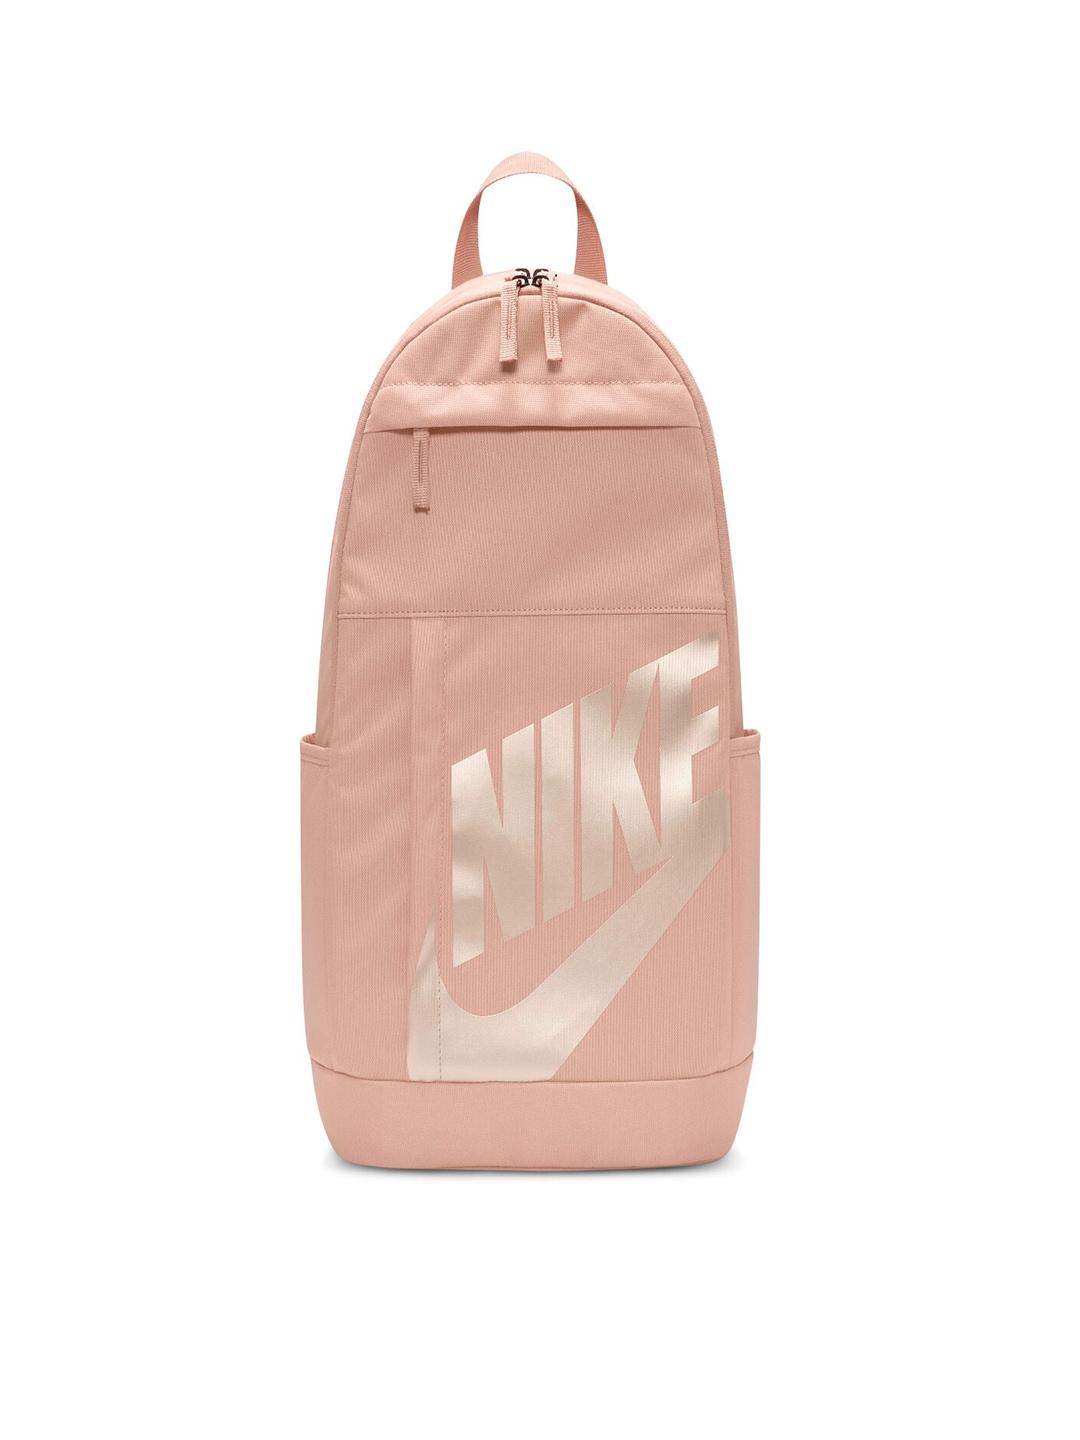 nike-brand-logo-printed-backpack-21l